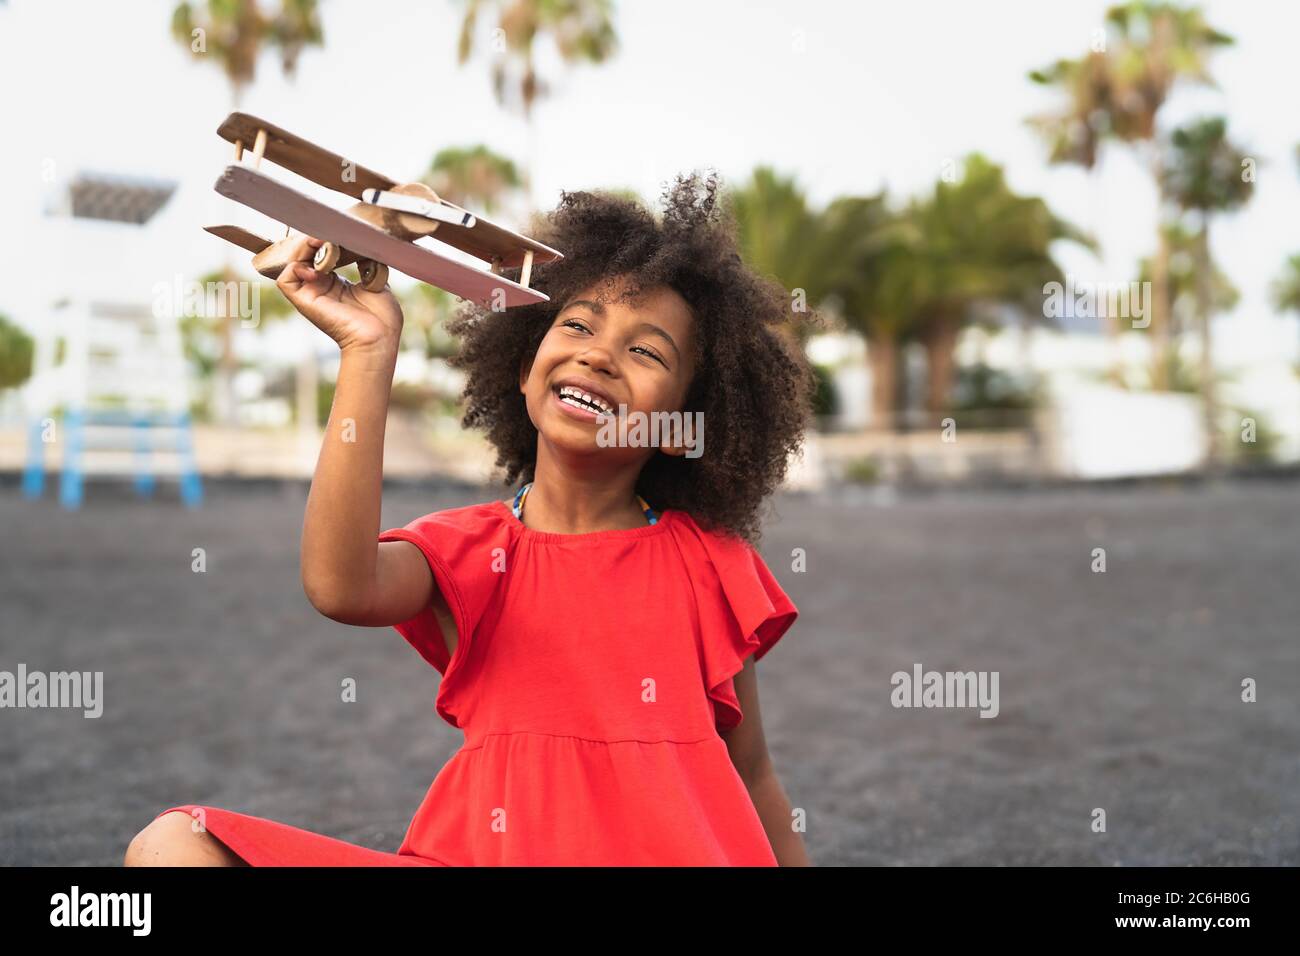 Niño afro jugando con el avión de juguete de madera en la playa - niño pequeño divertirse durante las vacaciones de verano - niños y viajes concepto de vacaciones Foto de stock